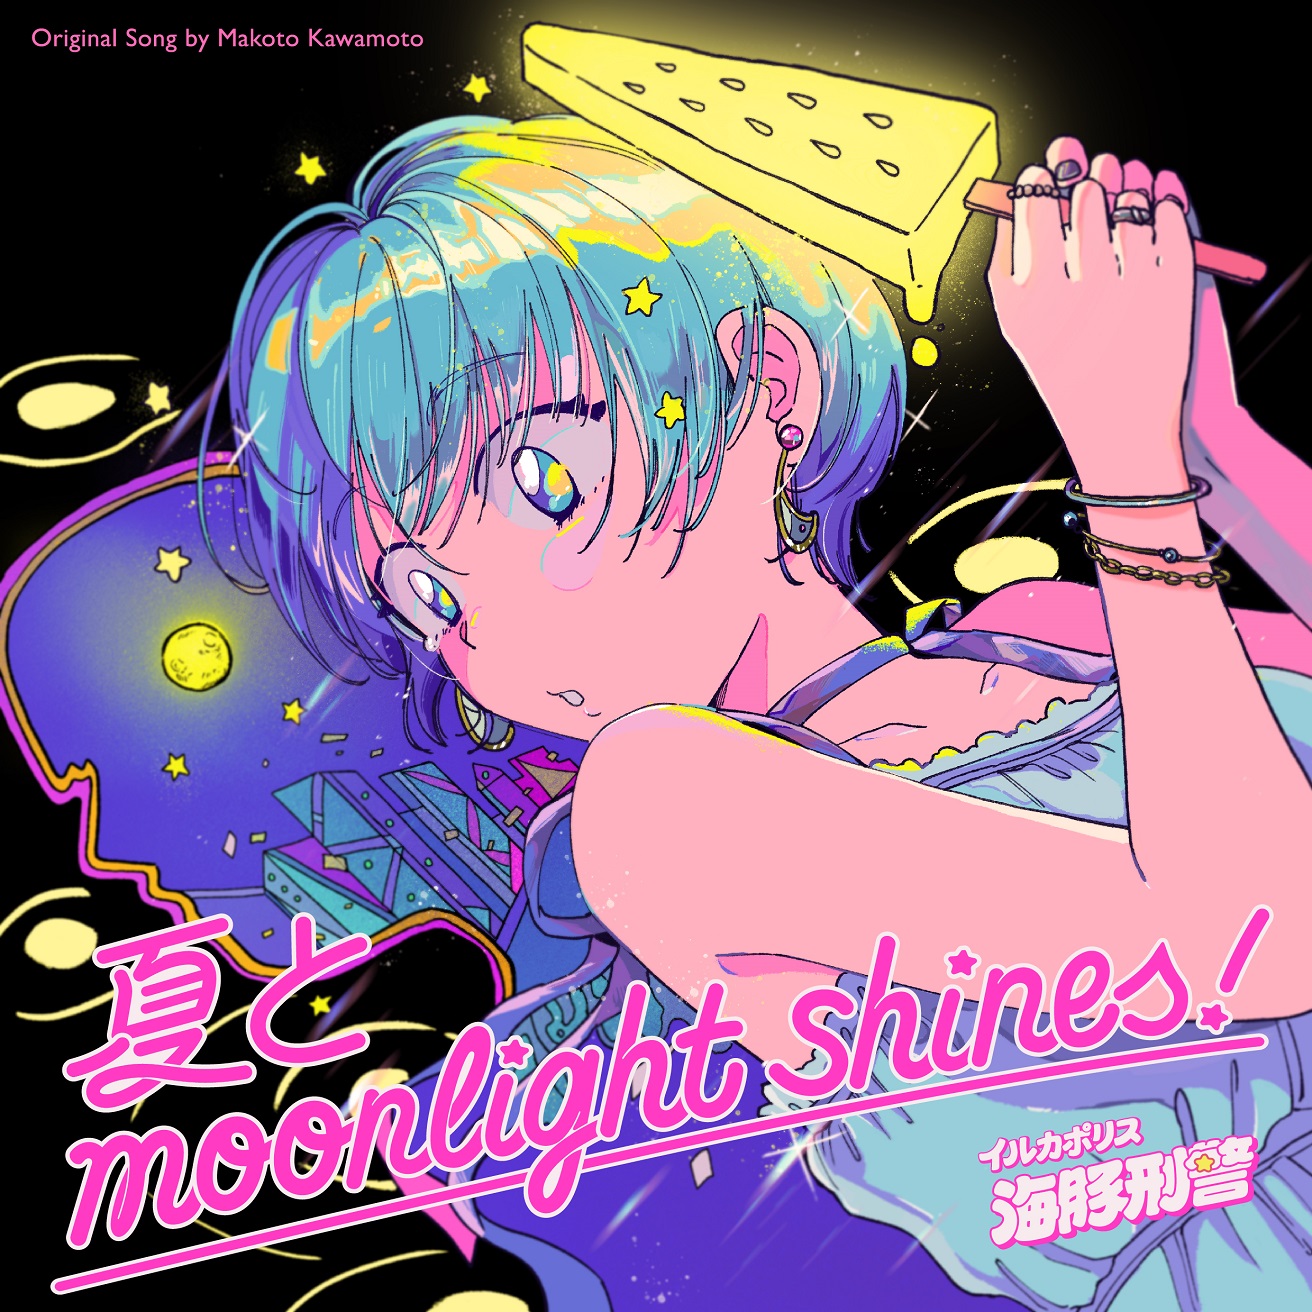 イルカポリス 海豚刑警が川本真琴の名曲“ホラーすぎる彼女です”を大胆カバー、新曲“夏とMoonlight Shines!”をリリース